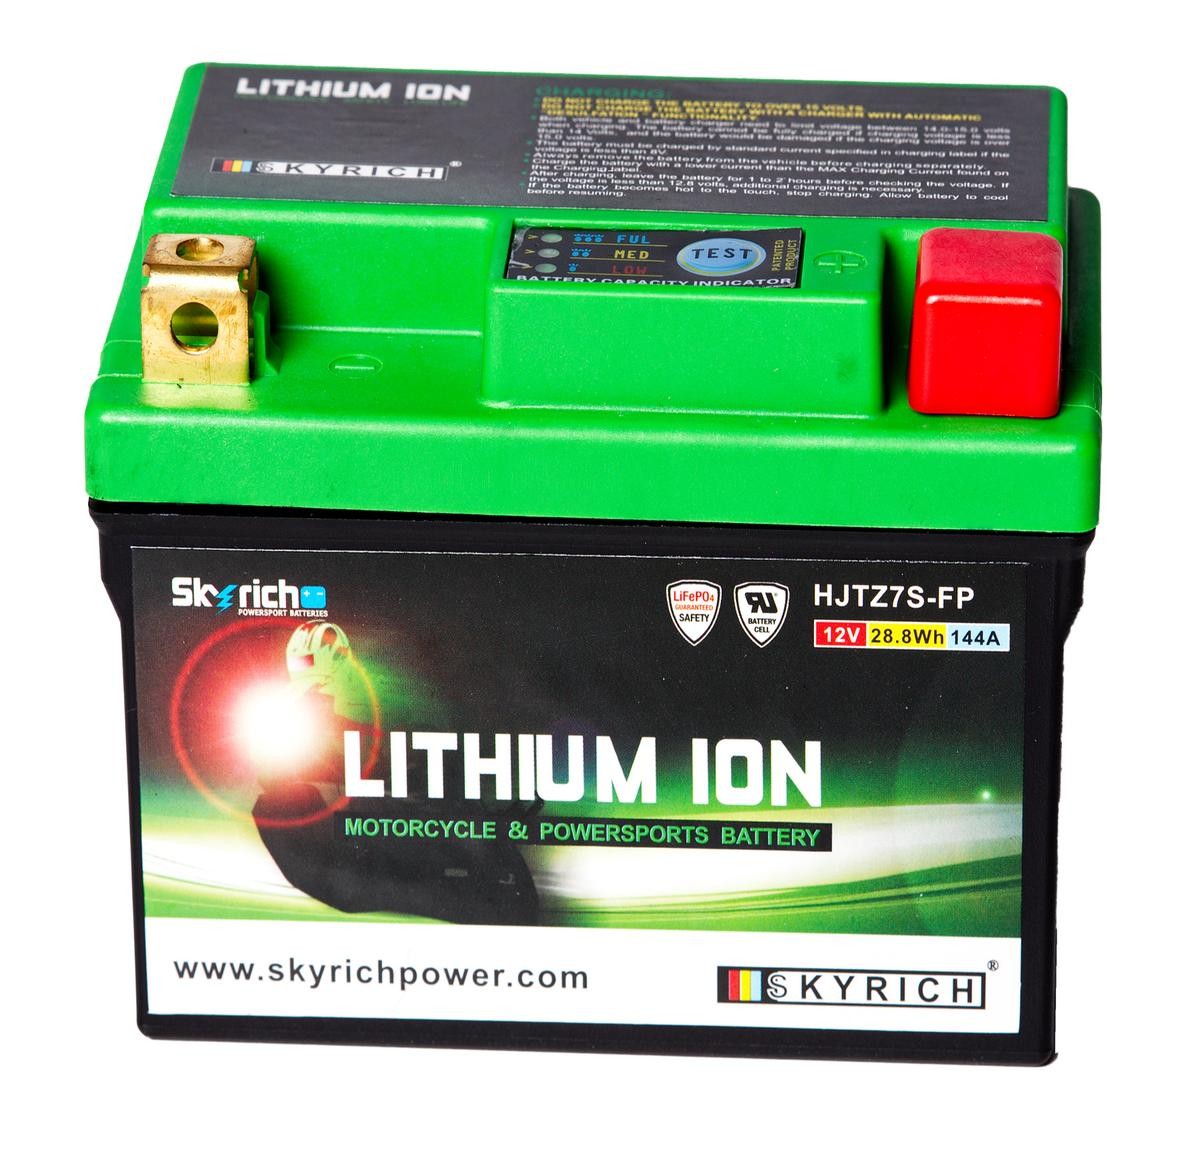 GASGAS EC Batterie 12,8V 2,4Ah 144A N Li-Ionen-Batterie SKYRICH LITHIUM ION HJTZ7S-FP